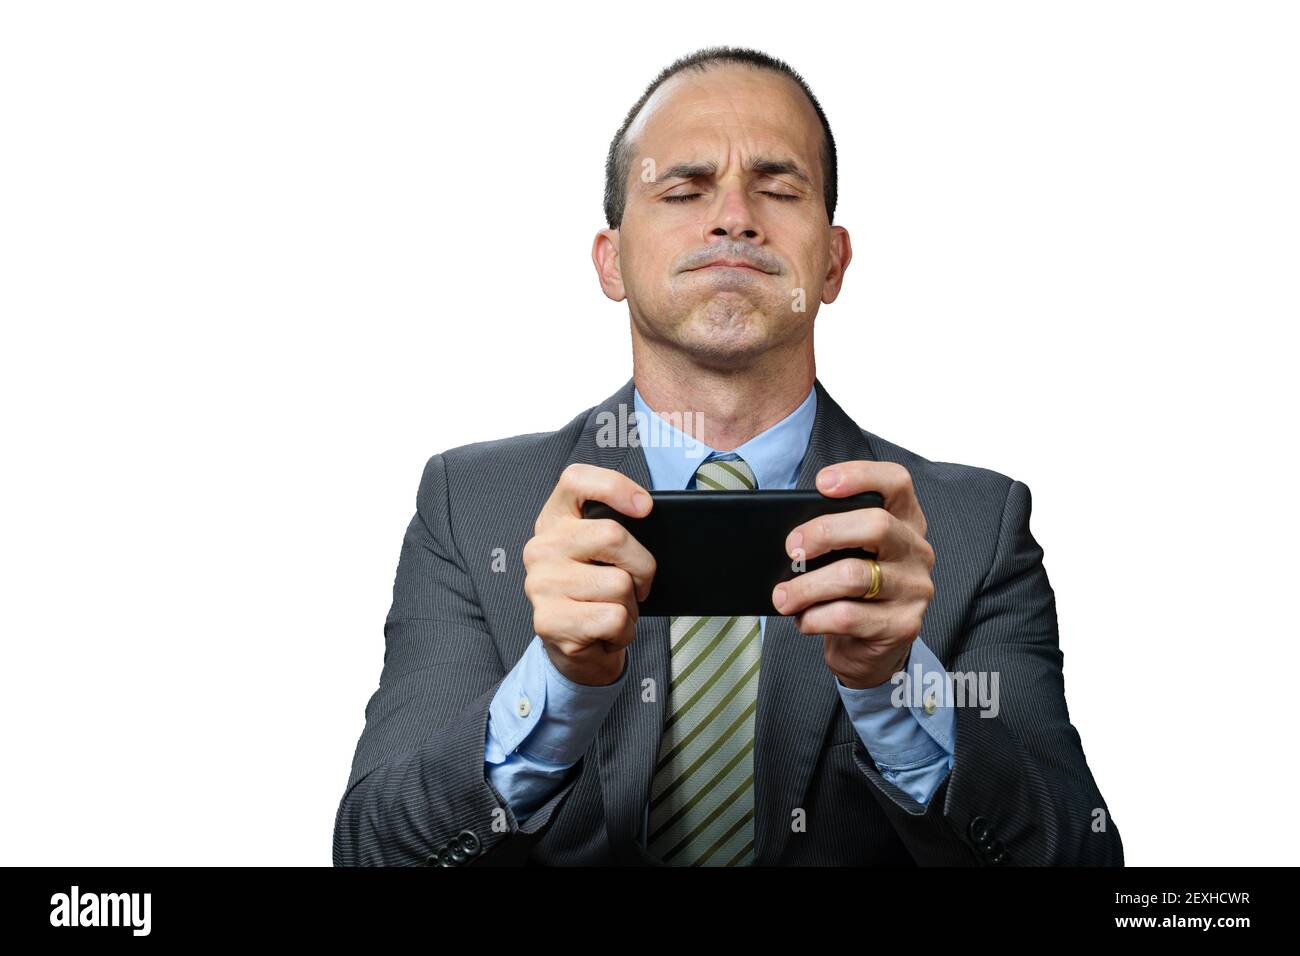 Uomo maturo con abito e cravatta, tenendo lo smartphone orizzontalmente, respirando attraverso il naso e con gli occhi chiusi. Foto Stock